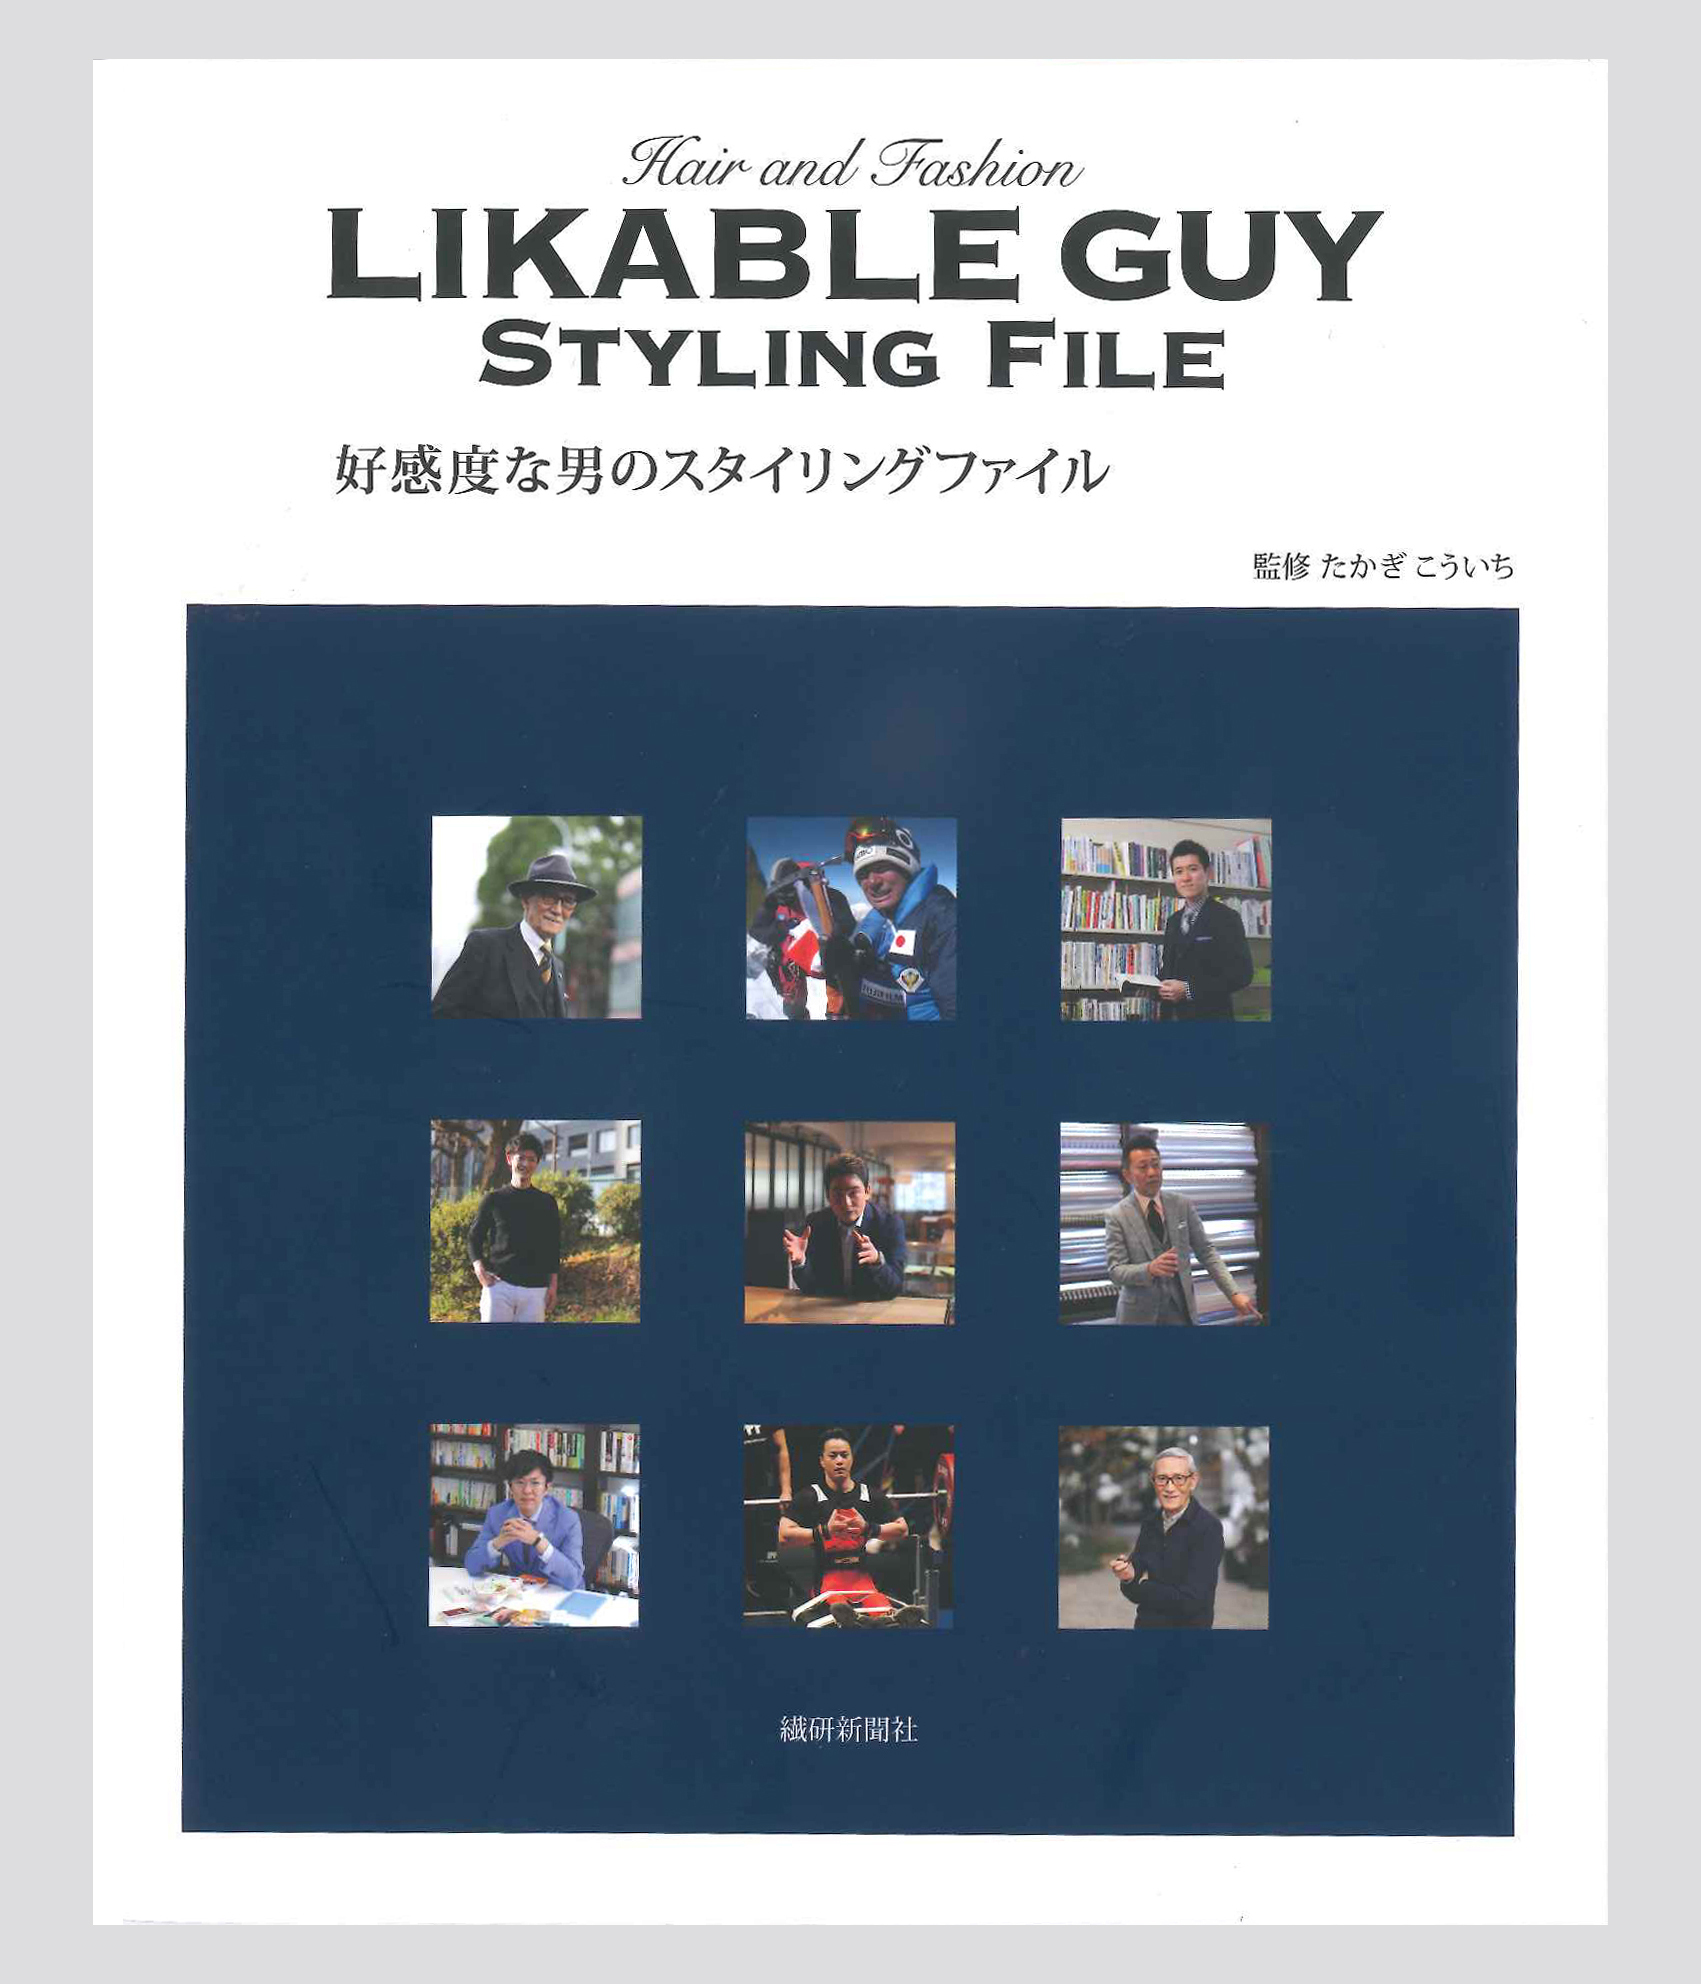 5月10日より書籍 好感度な男のスタイリングファイル が発売 繊研新聞社のプレスリリース